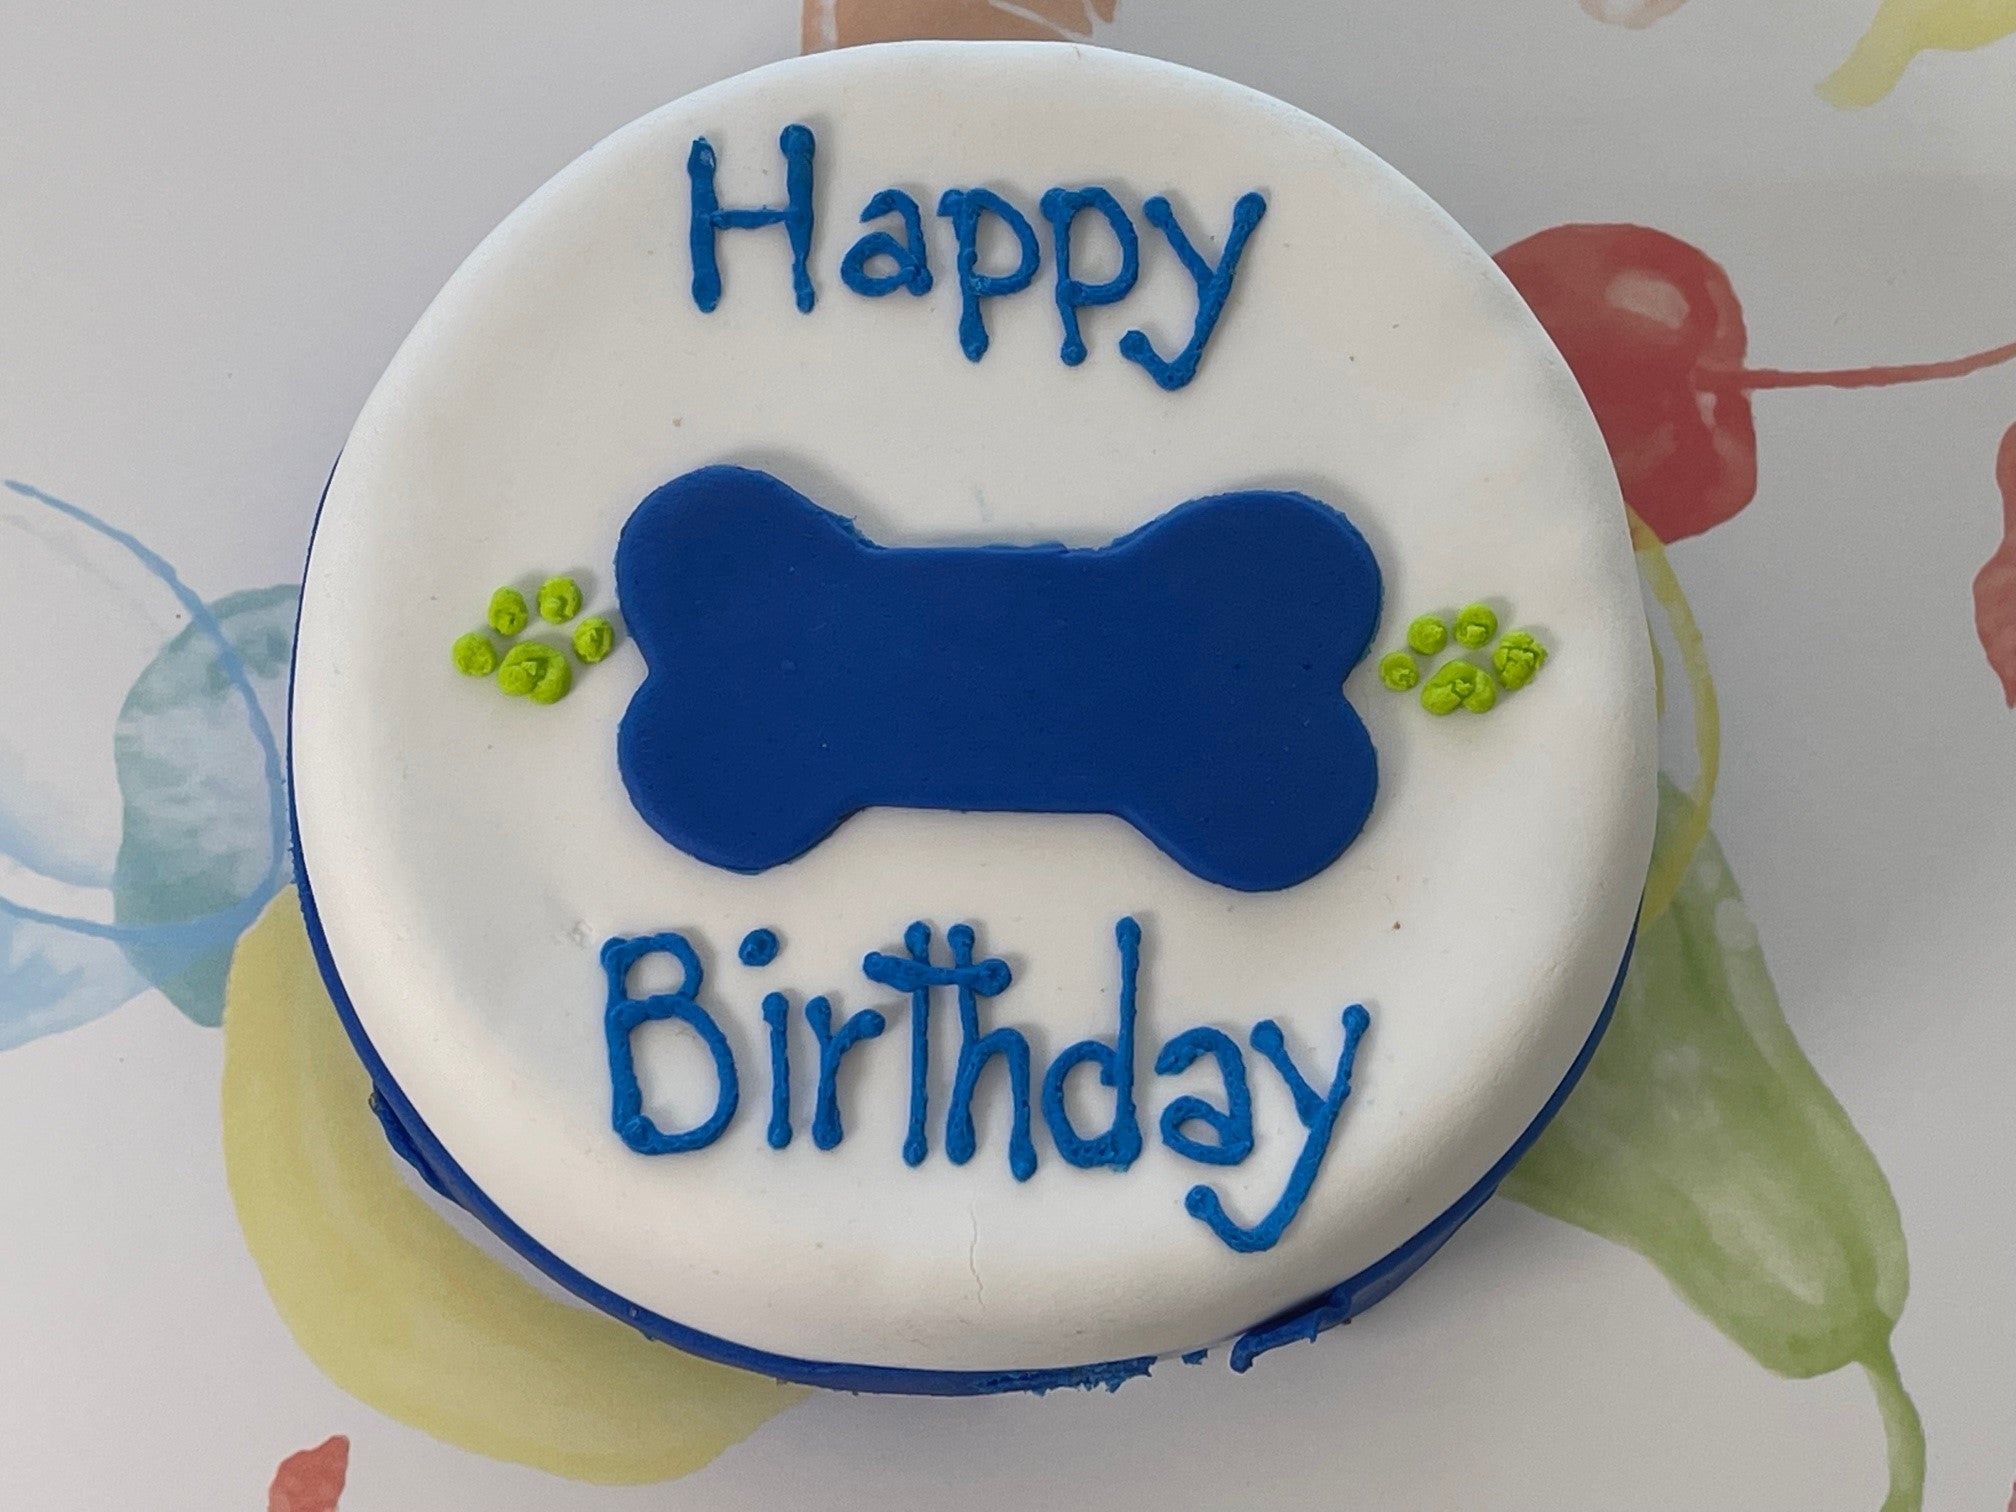 funny birthday dog cake